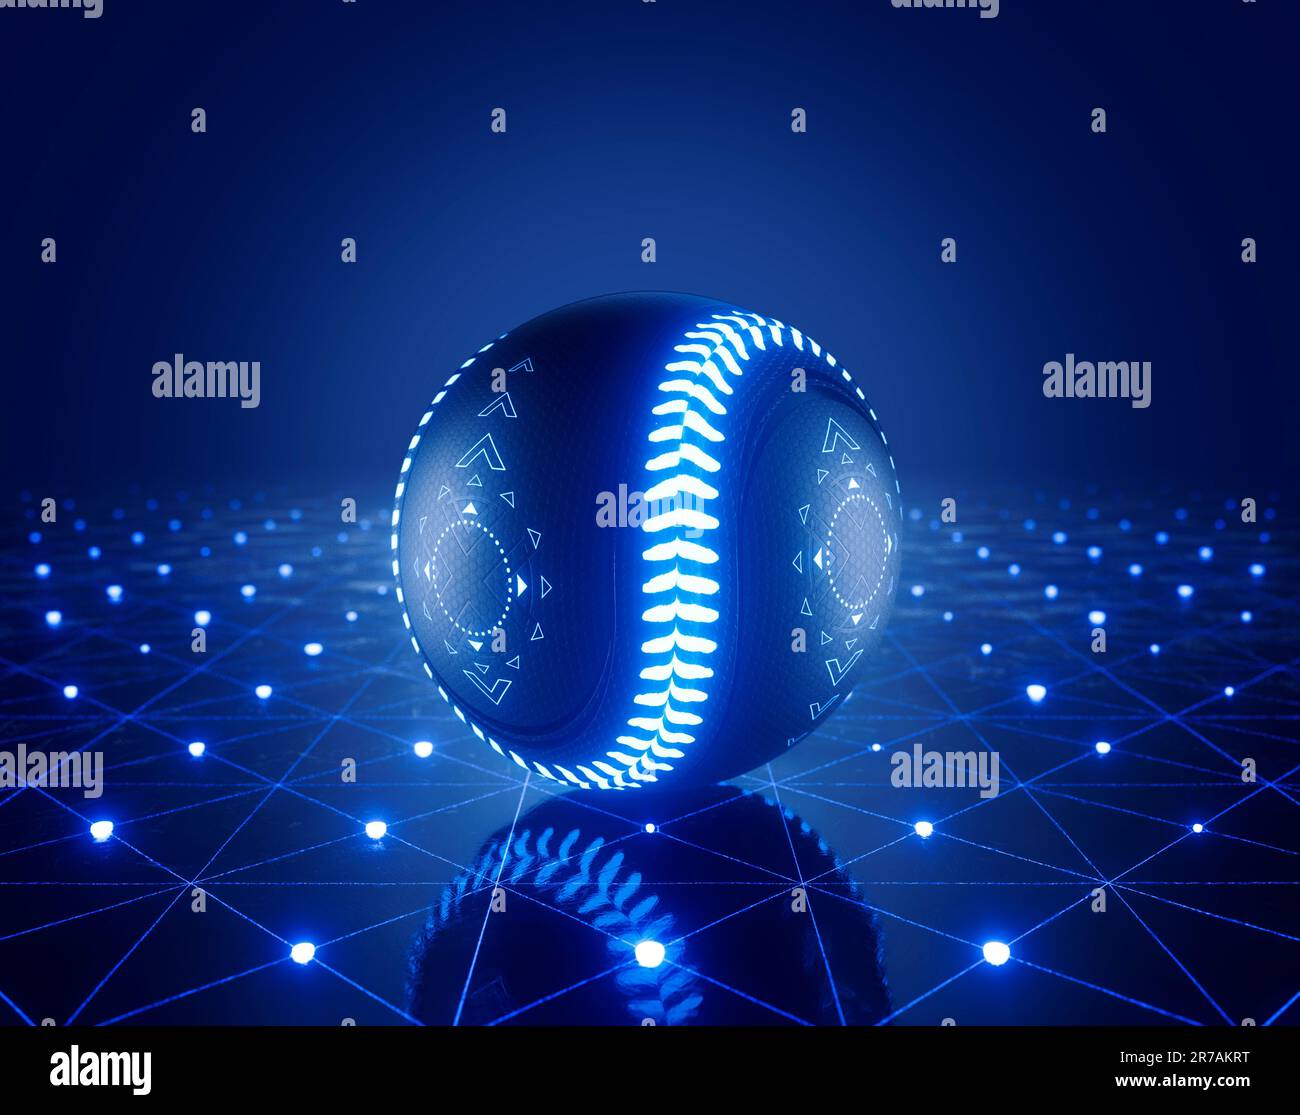 Un concetto sportivo di una futuristica palla da baseball illuminata con marcature al neon su un palco di vetro con marcature al neon - rendering 3D Foto Stock